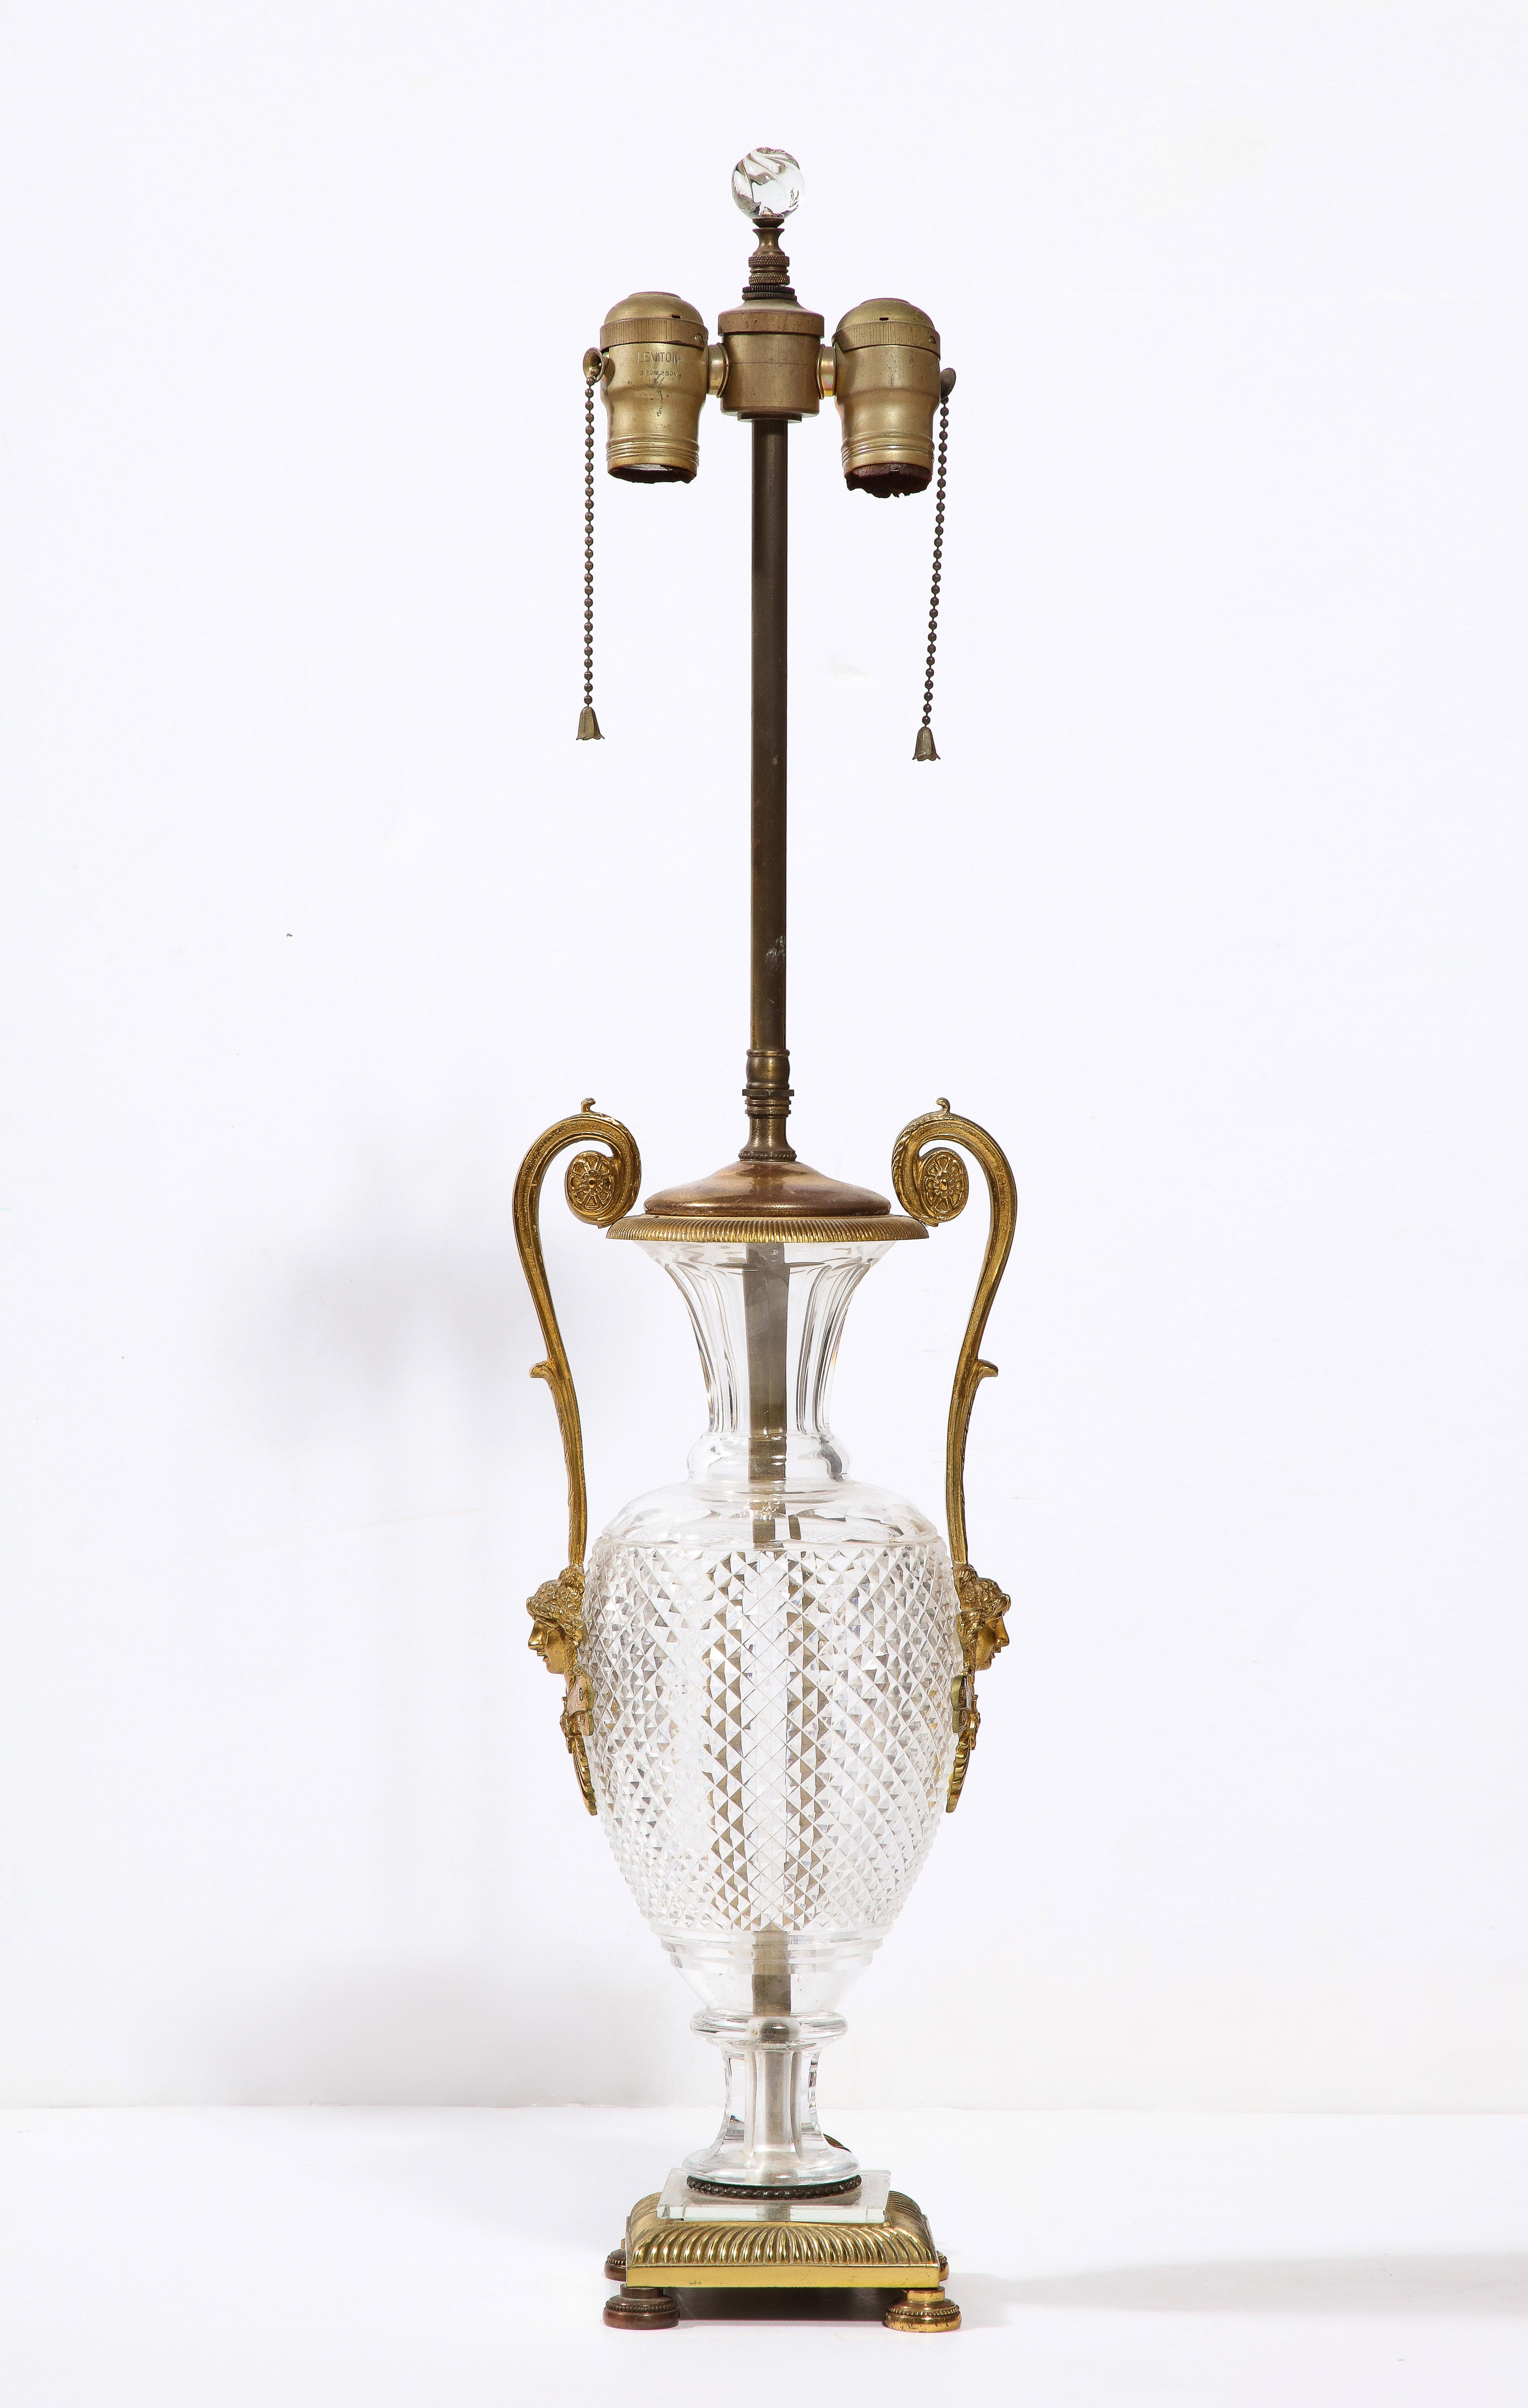 Une belle forme d'urne en cristal taillé de style néoclassique français avec des poignées en forme de cygne montées sur bronze doré et une base carrée.

Hauteur de l'urne : 15